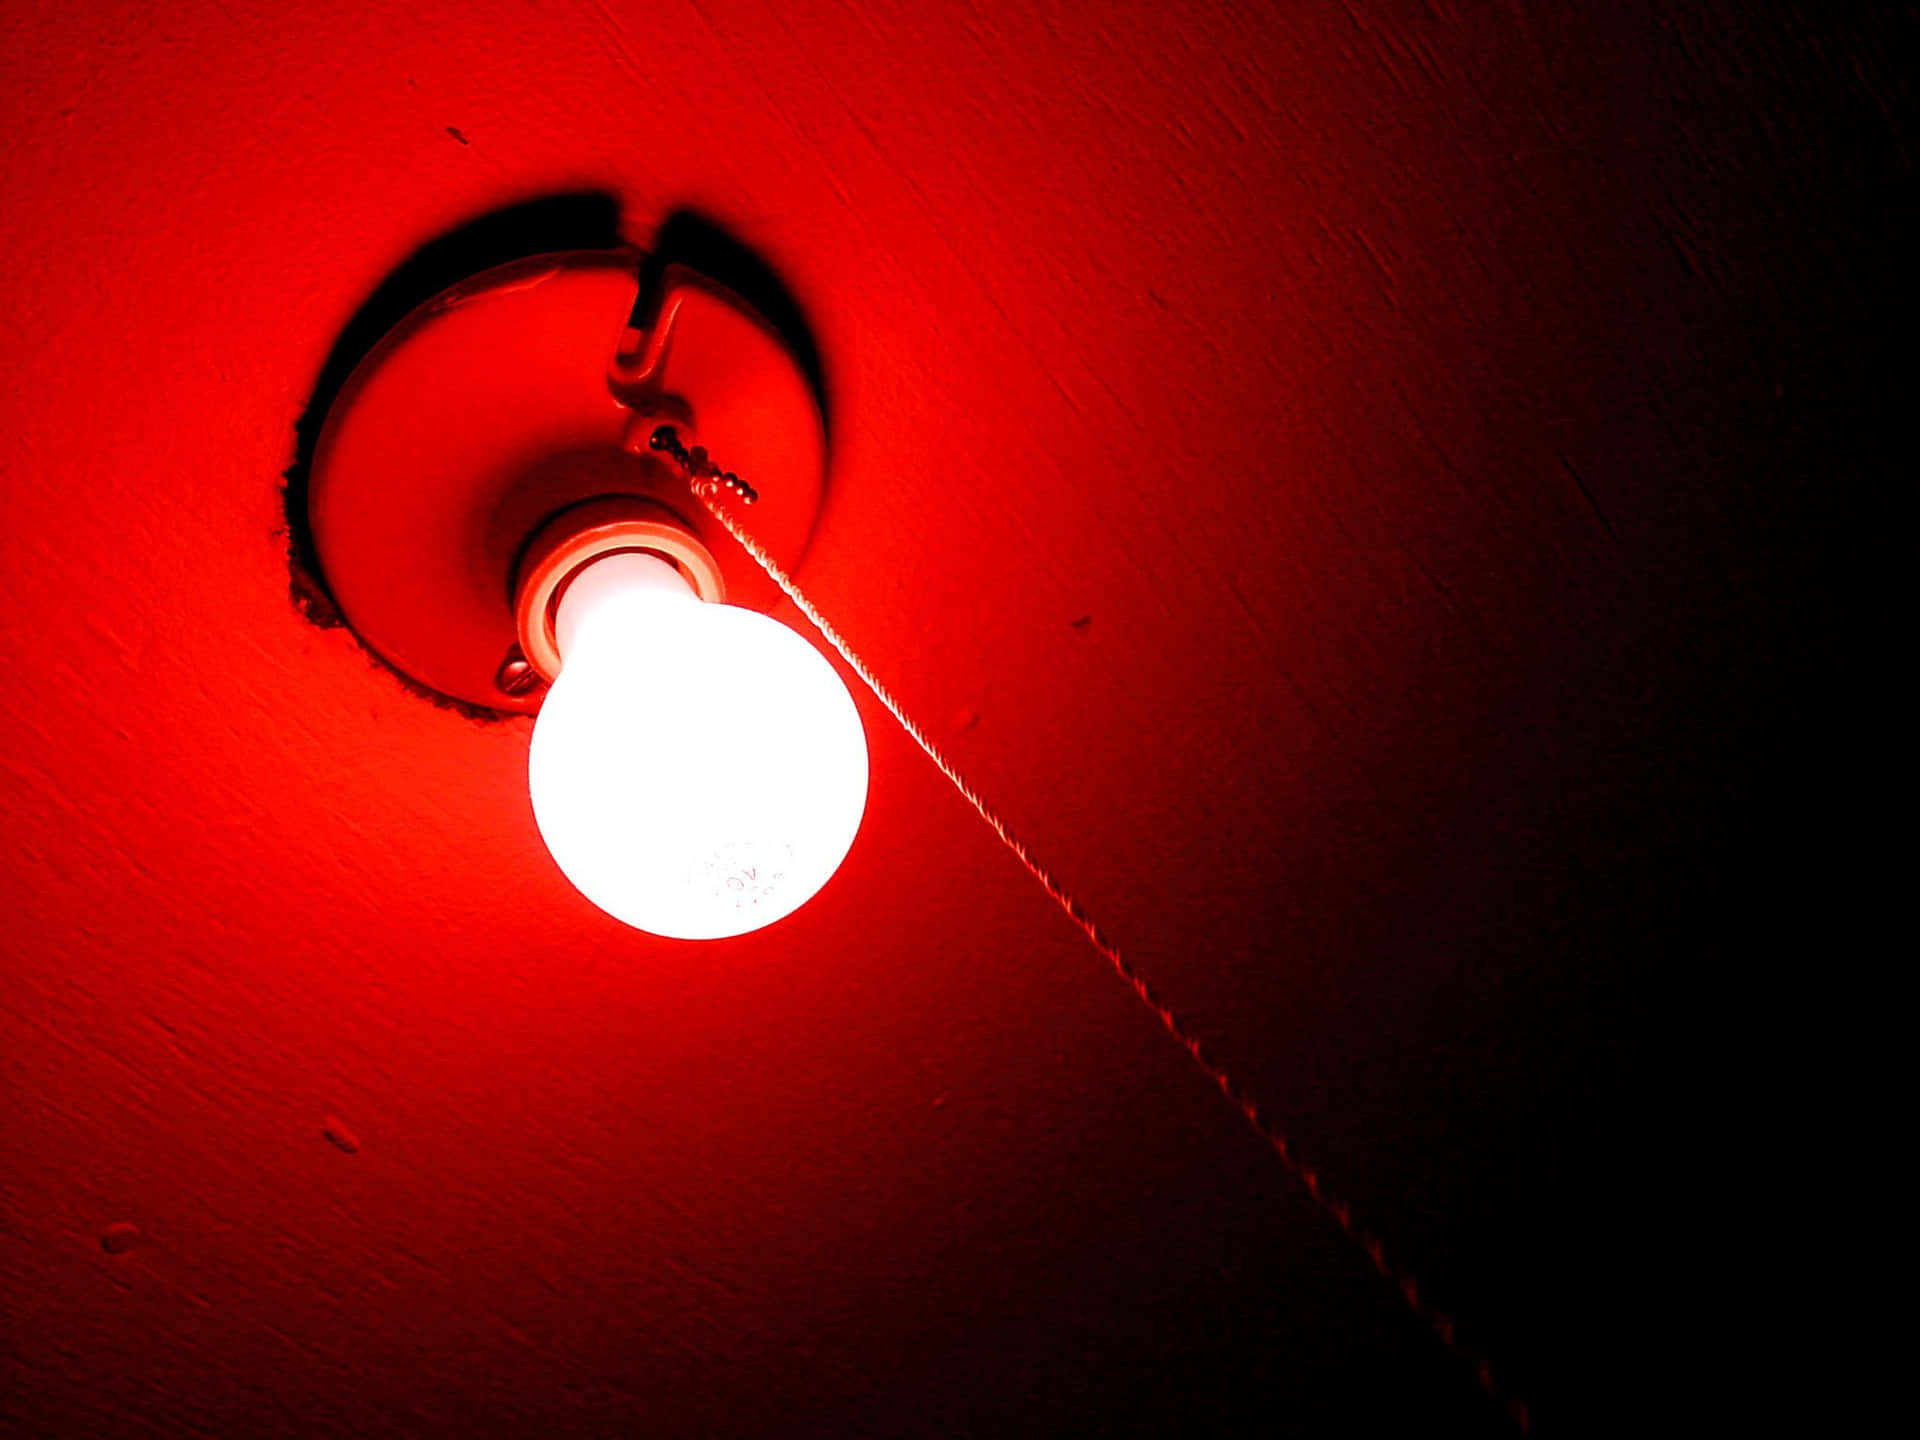 Lys op dit rum med røde LED-belysninger. Wallpaper